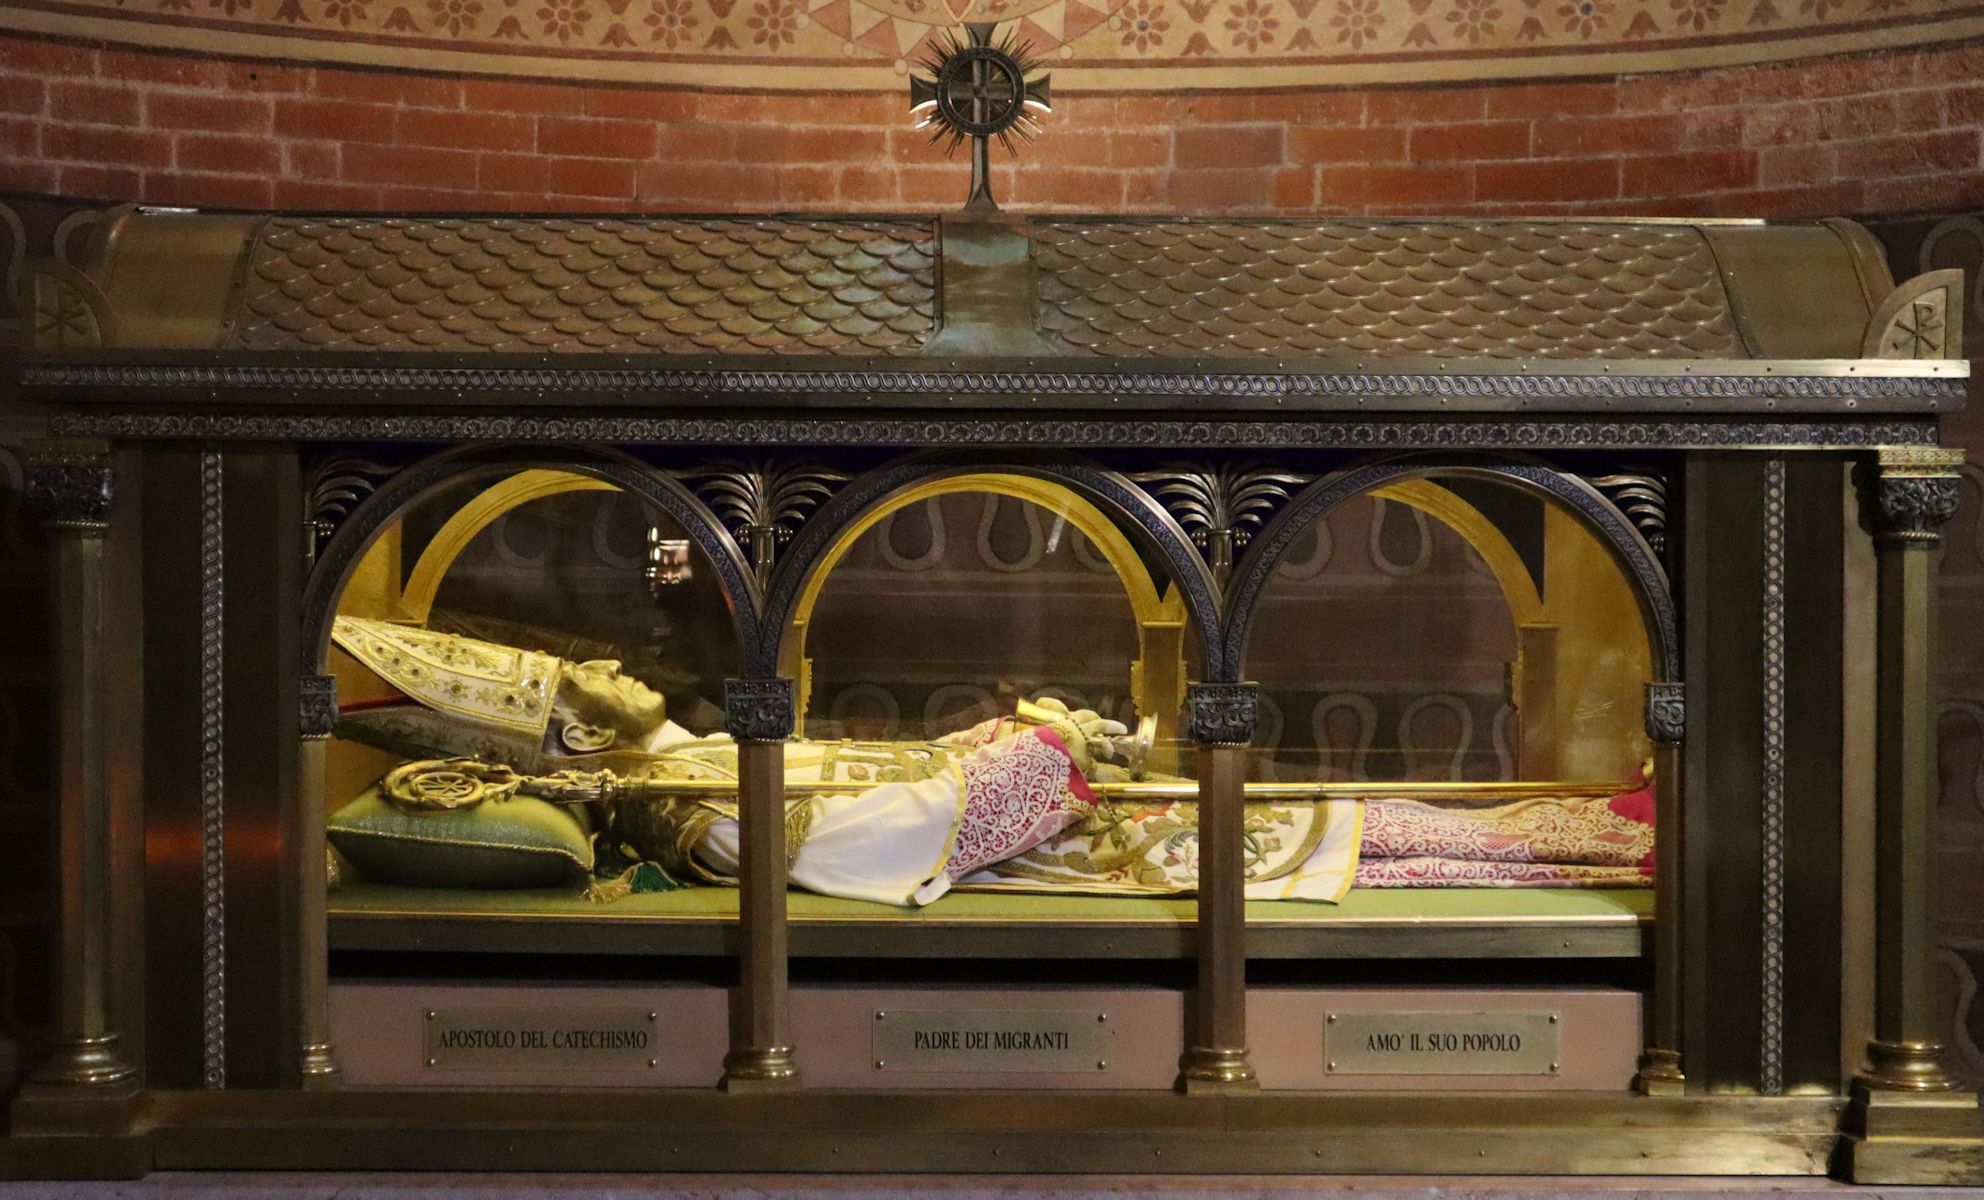 Liegefigur in der Kathedrale in Piacenza